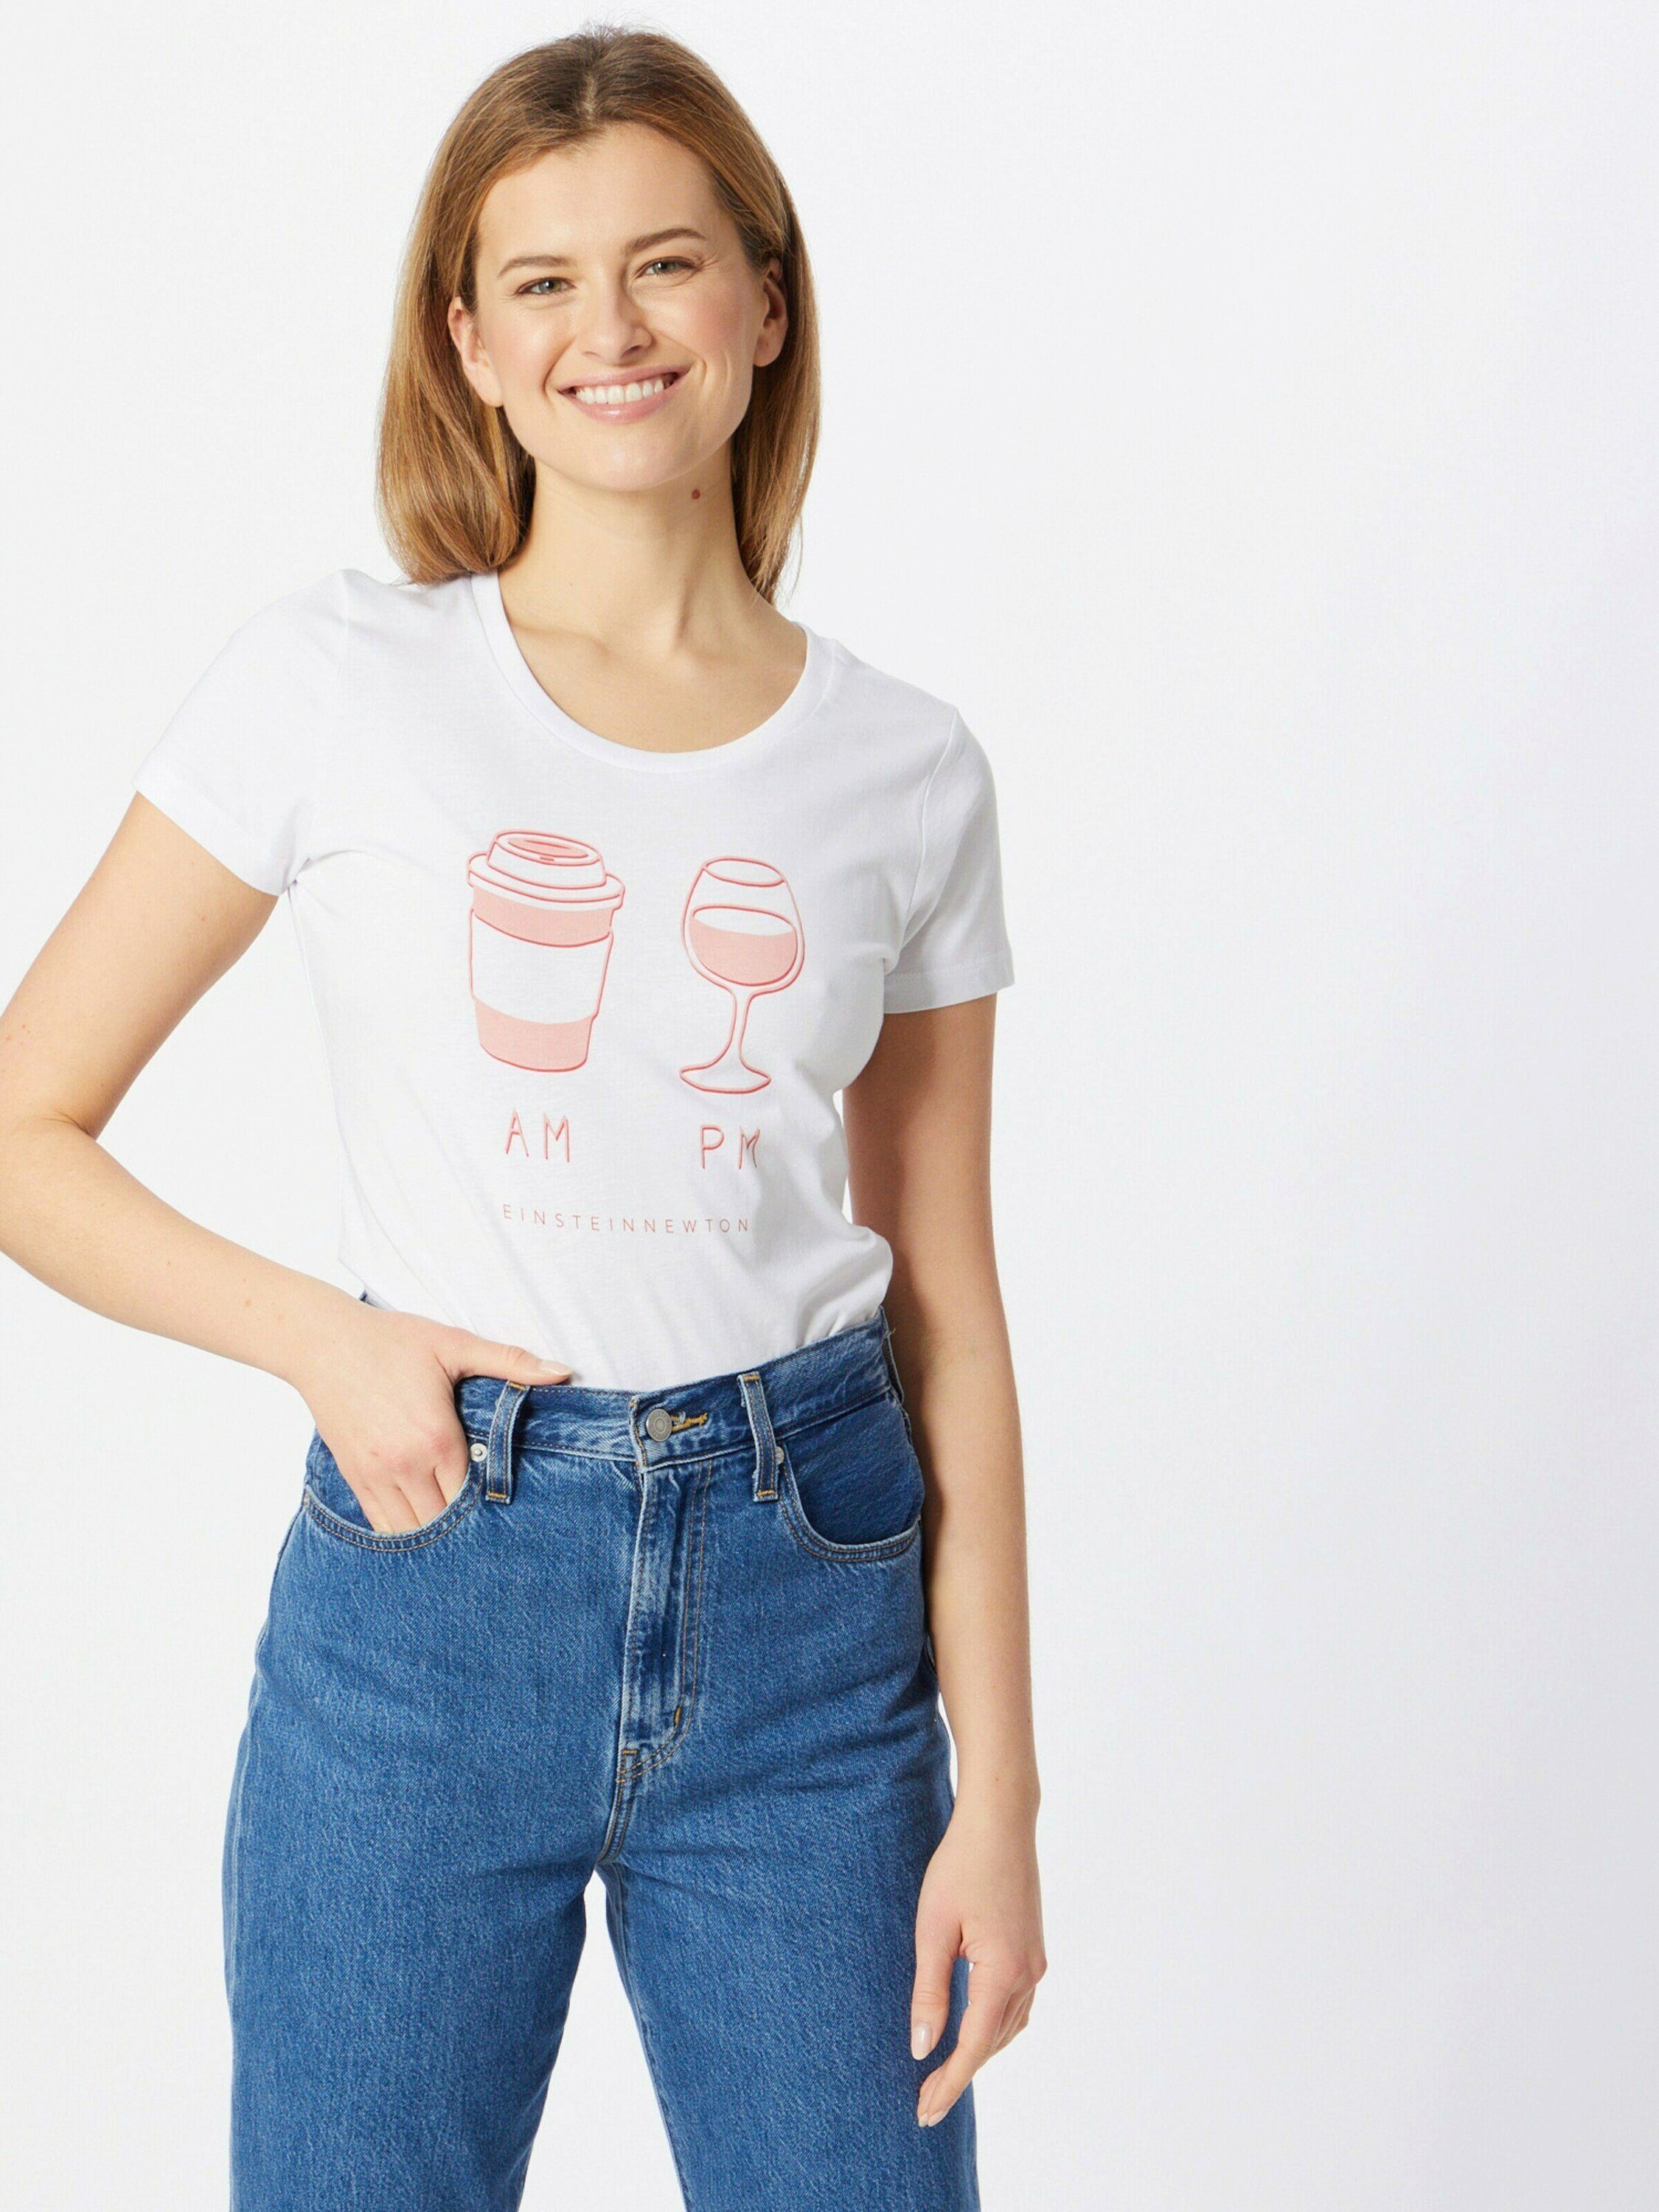 Damen Shirts EINSTEIN & NEWTON T-Shirt AM PM (1-tlg)